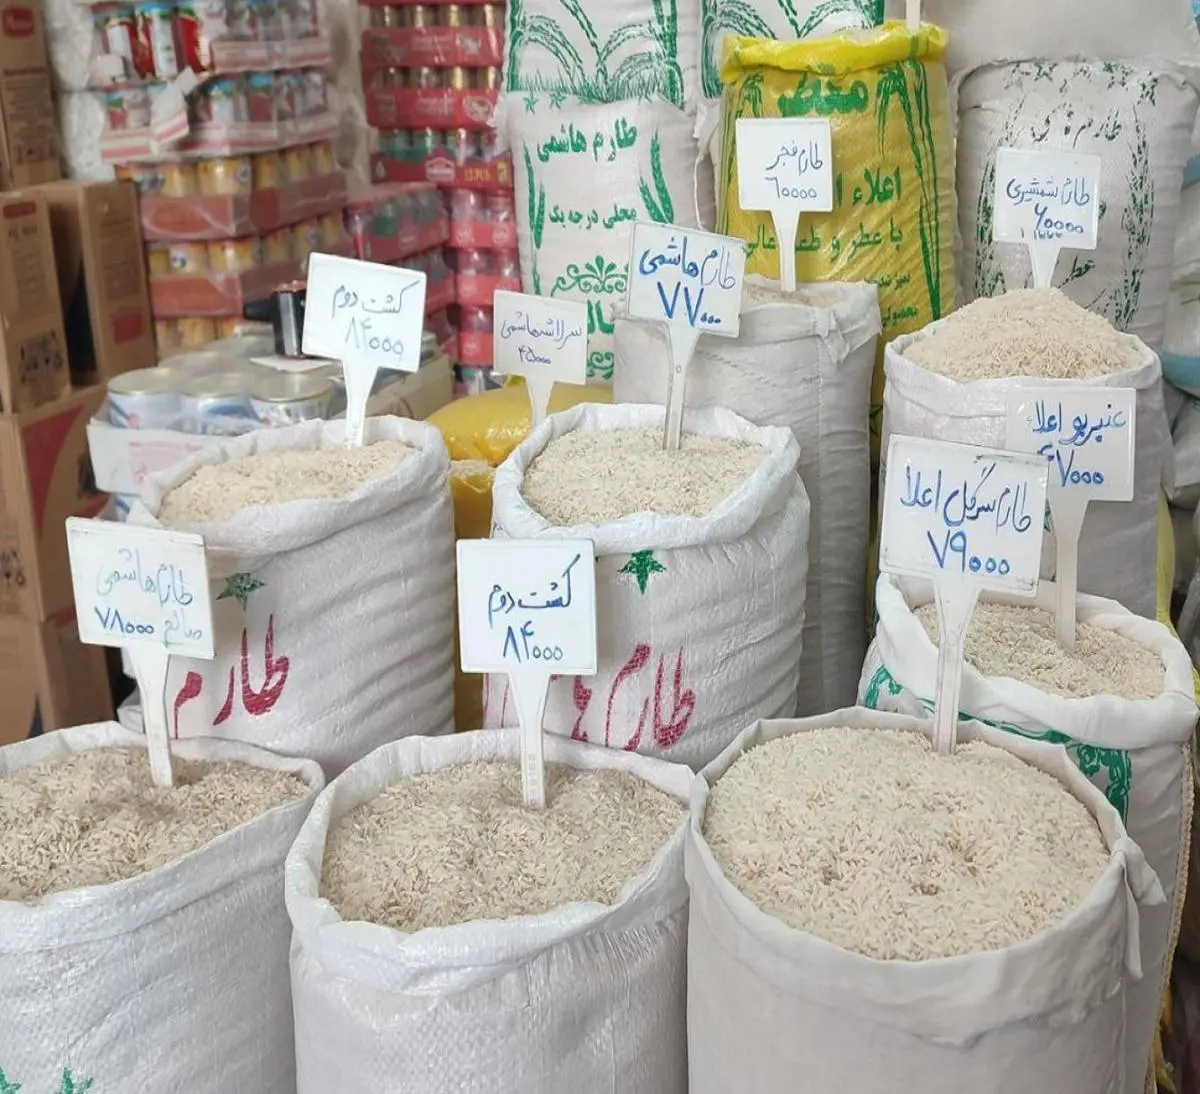 قیمت برنج امروز شنبه 14 خرداد | میزان کاهش قیمت برنج 